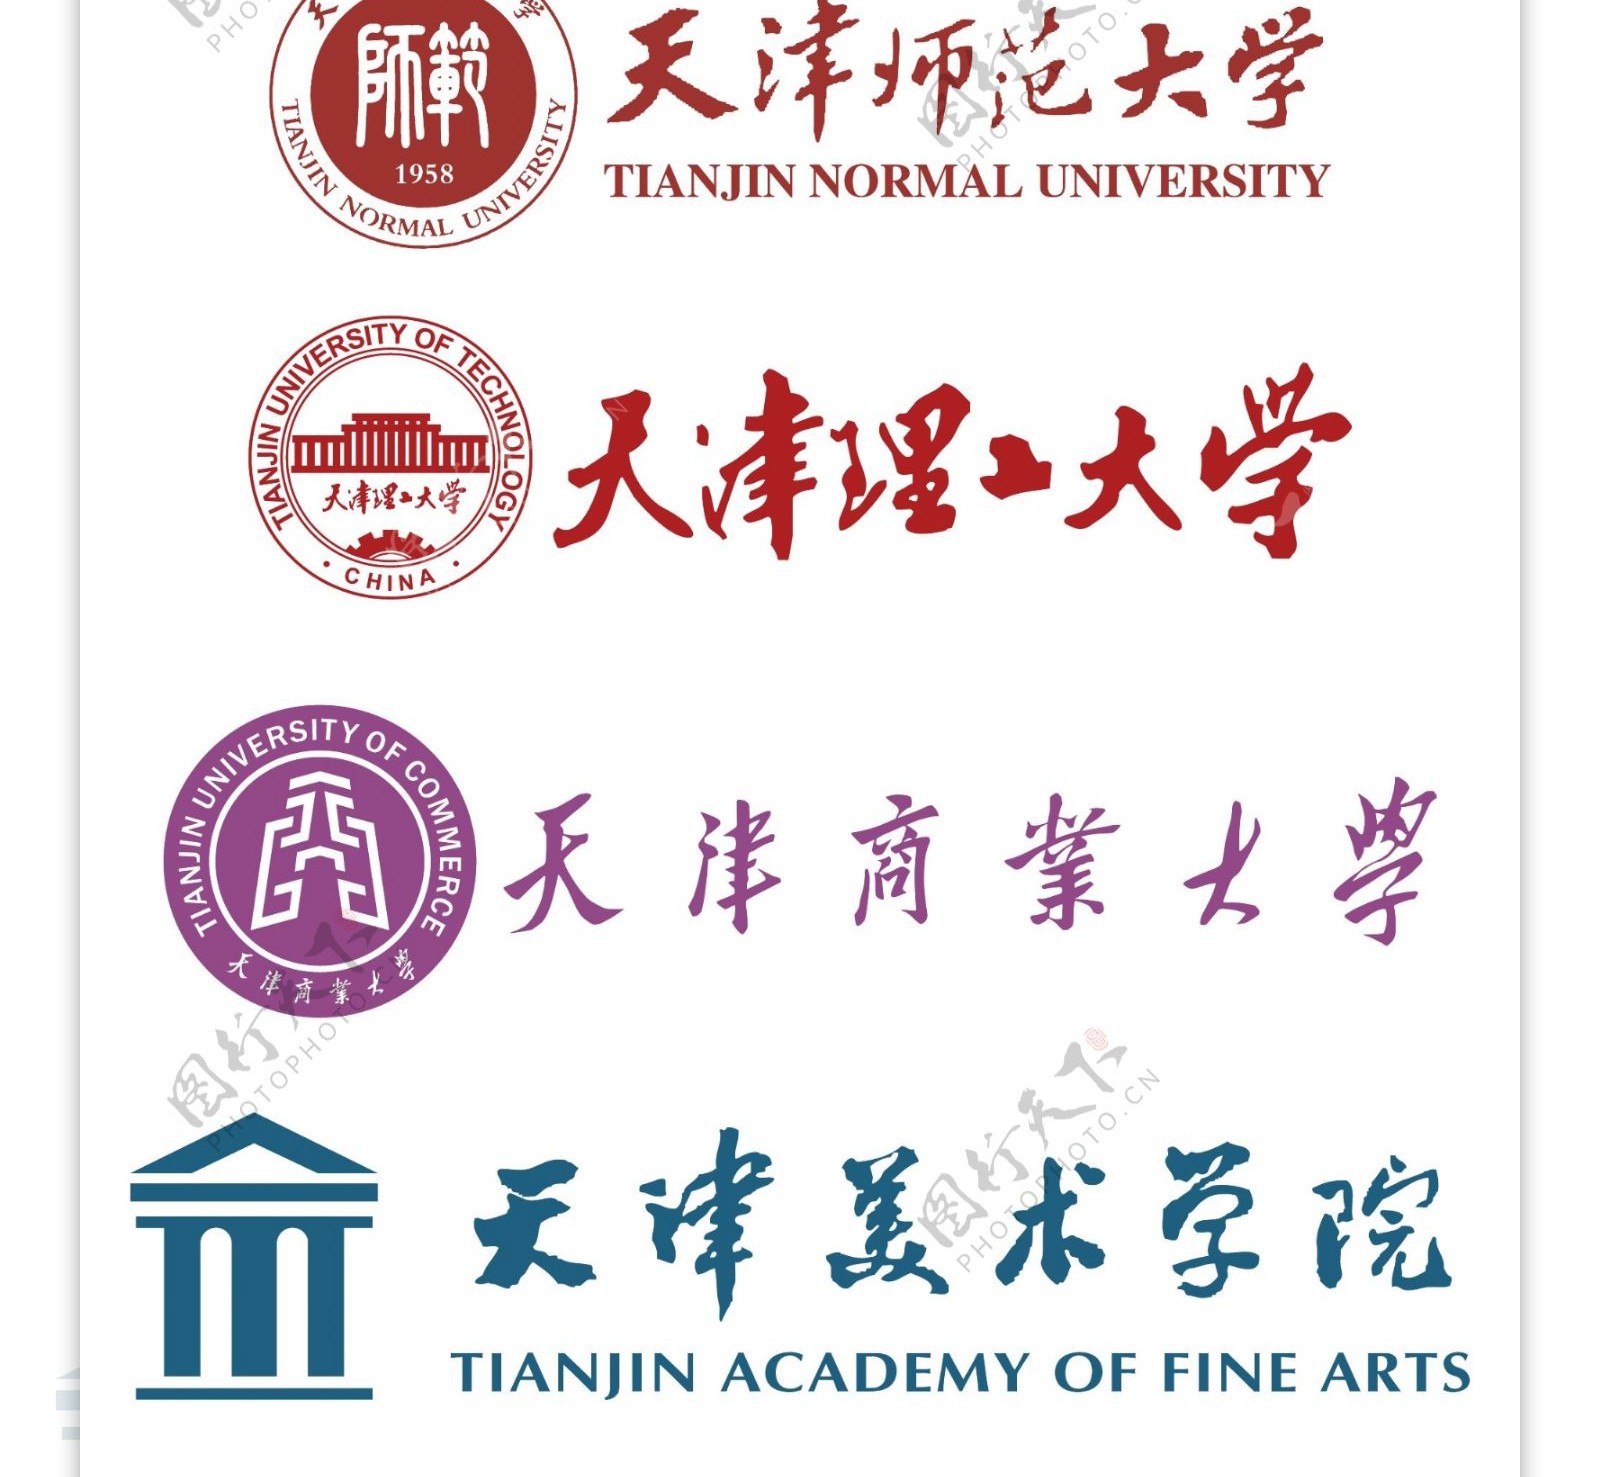 天津市大学校徽图片